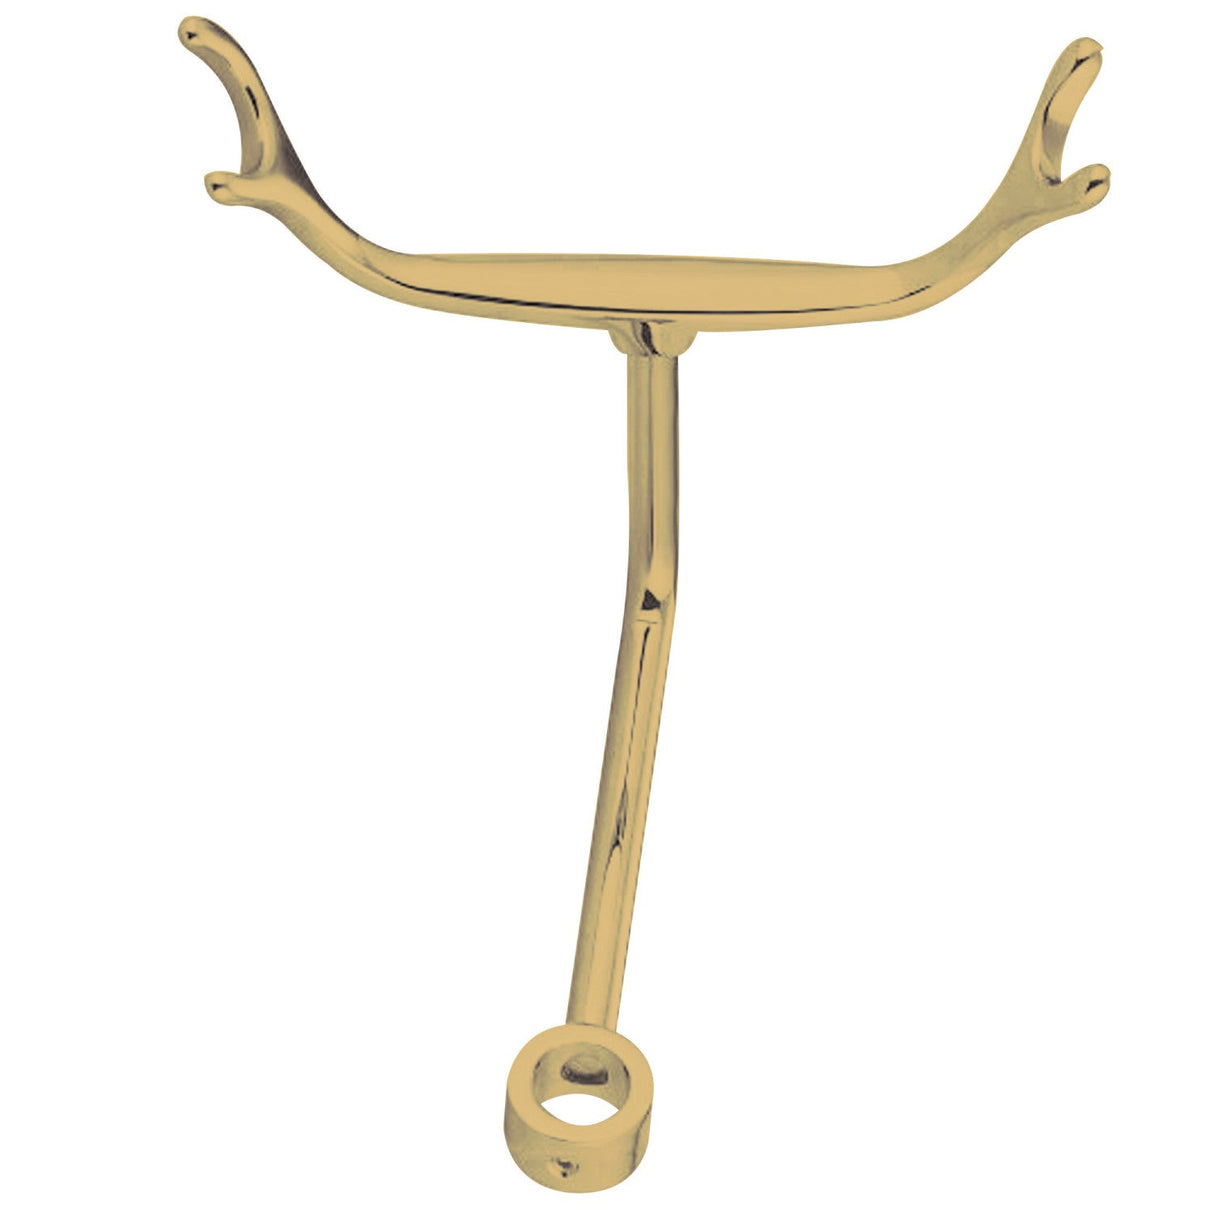 Vintage ABT1050-2 Hand Shower Cradle, Polished Brass